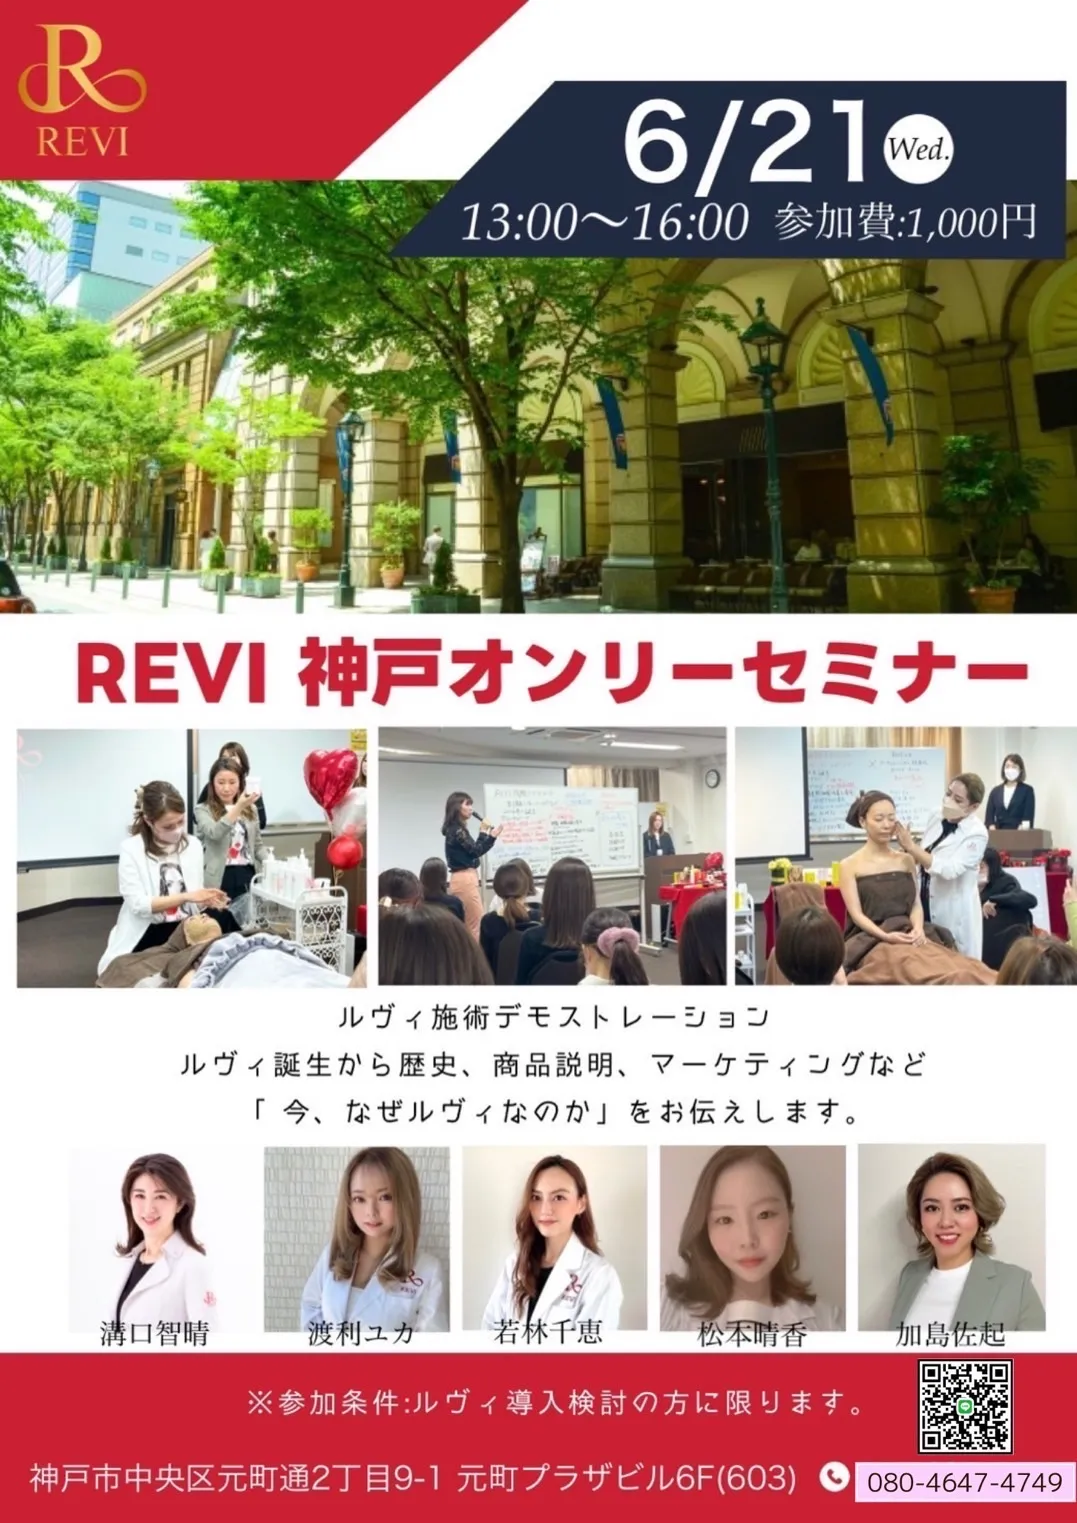 REVI神戸元町セミナーご参加ください